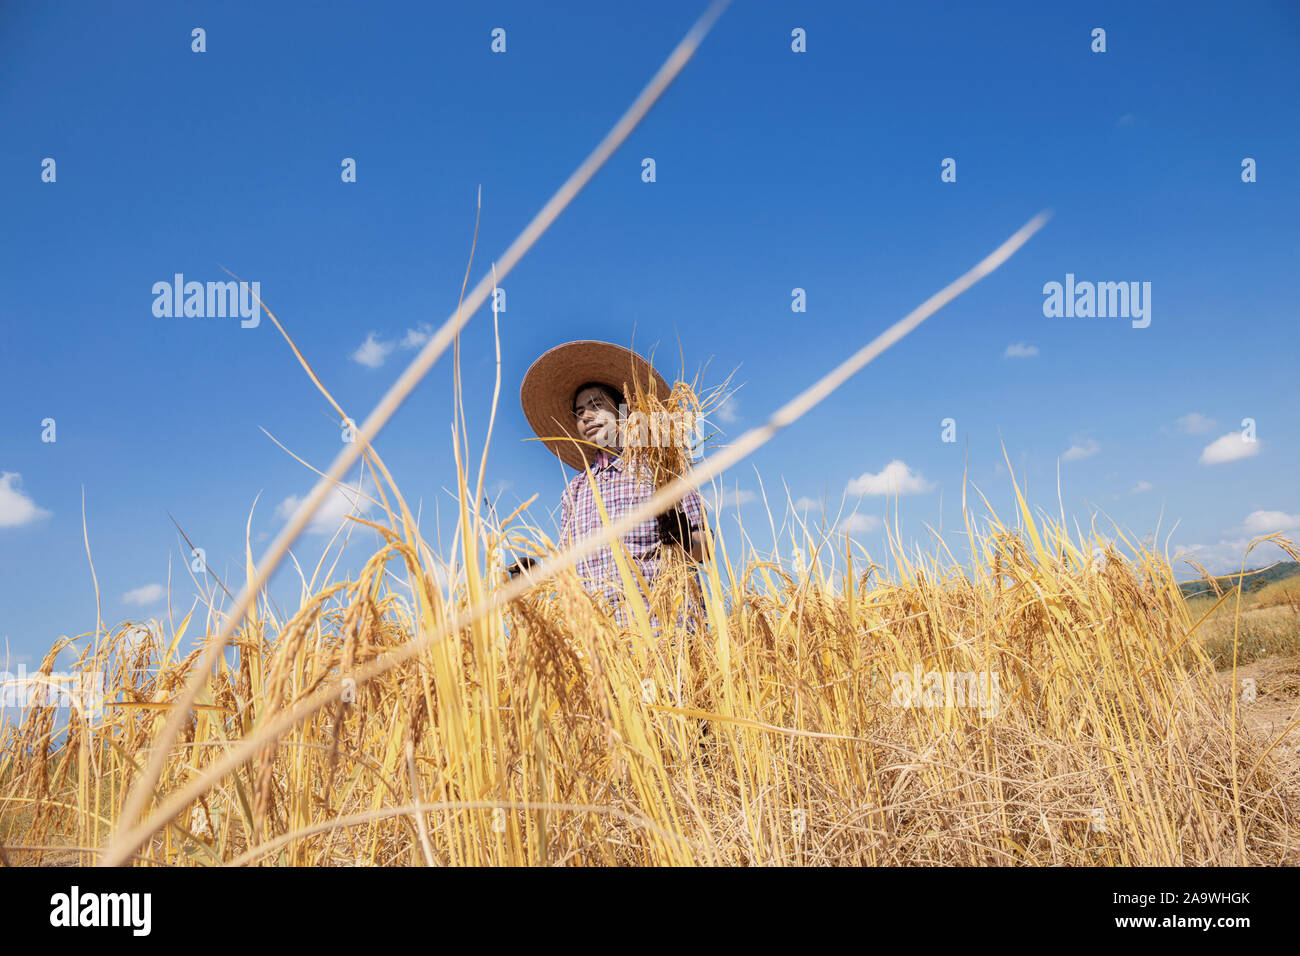 Les agriculteurs de la saison des récoltes dans les champs stand avec le bleu du ciel. Banque D'Images